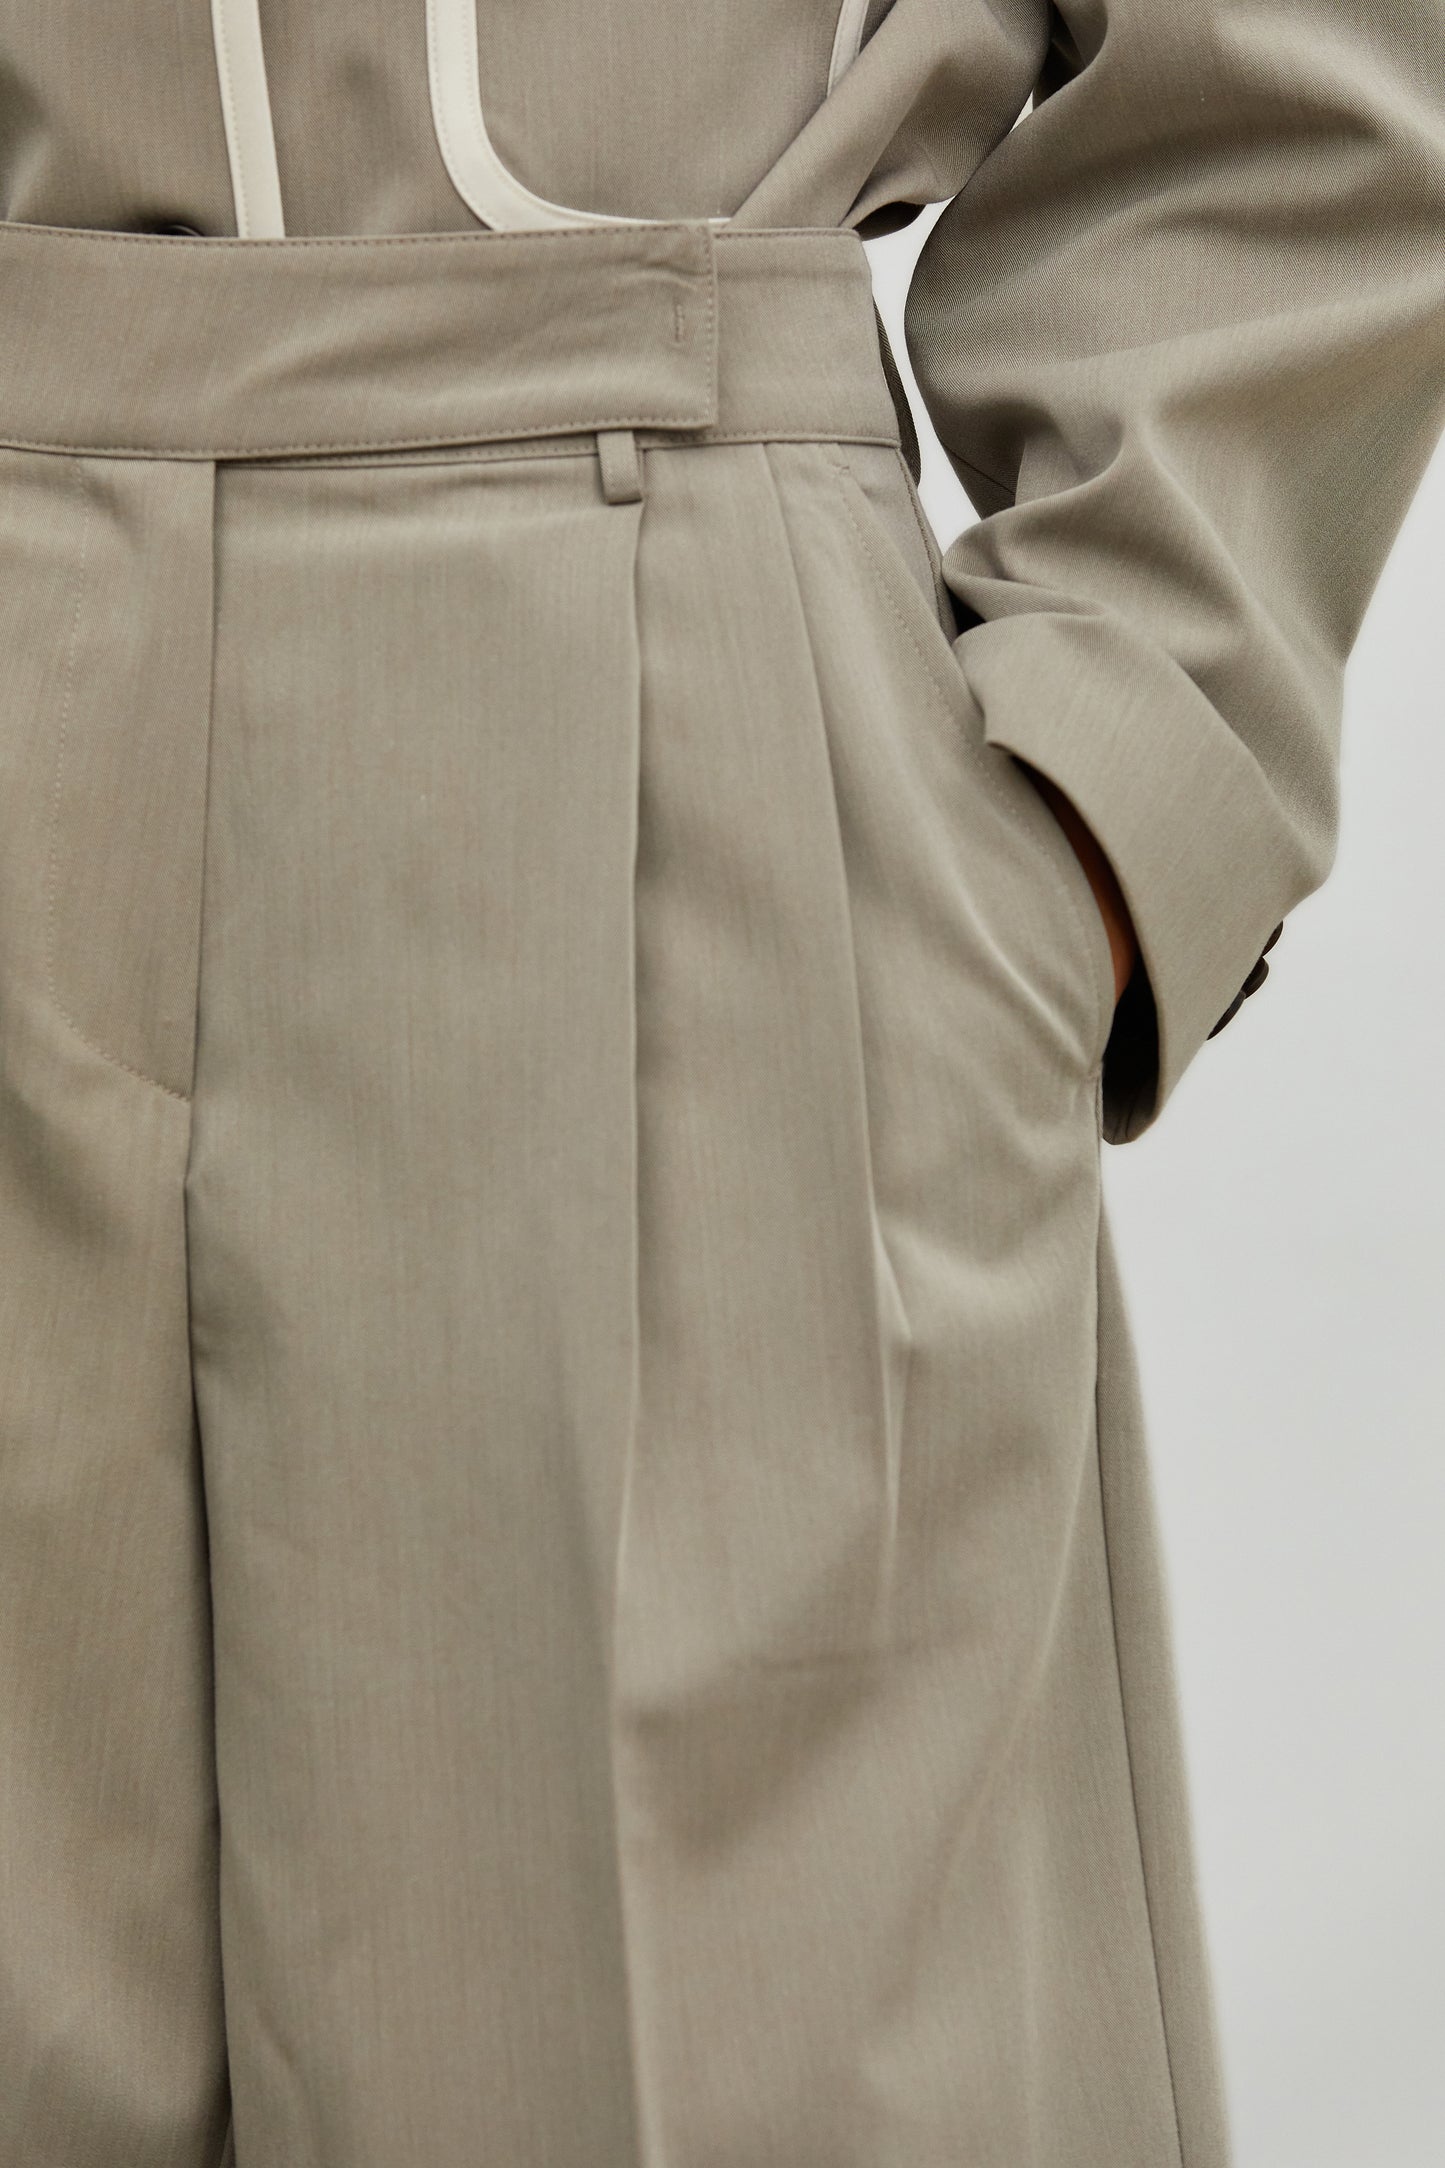 Wide Folded Suit Shorts, Hazelwood